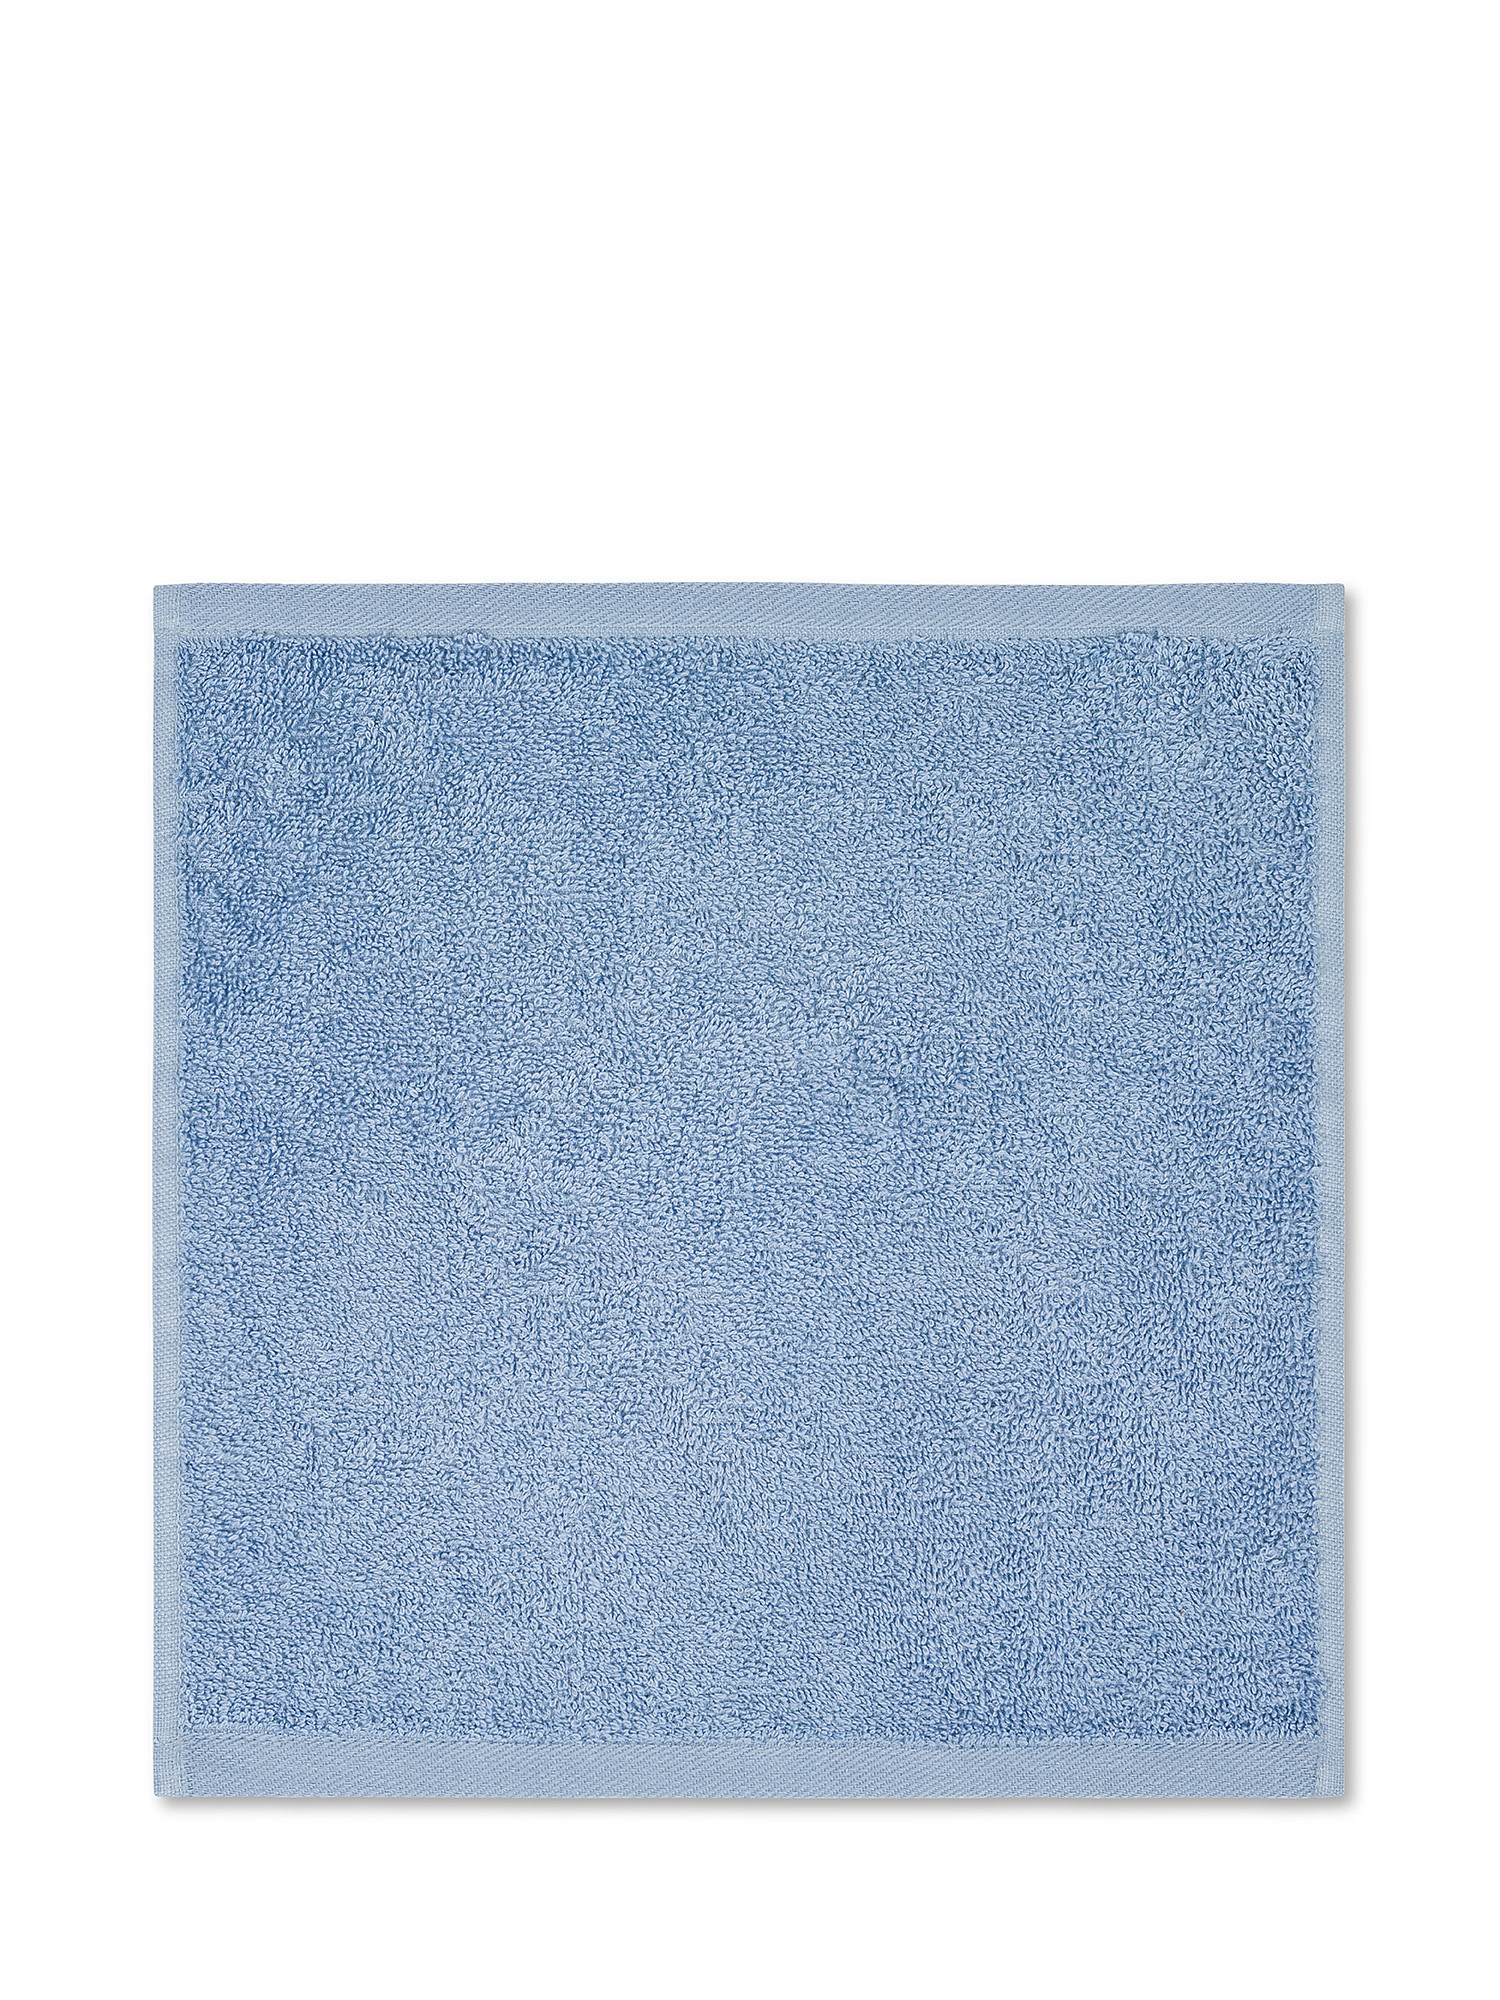 Lavetta 30X30 cm, Azzurro, large image number 1